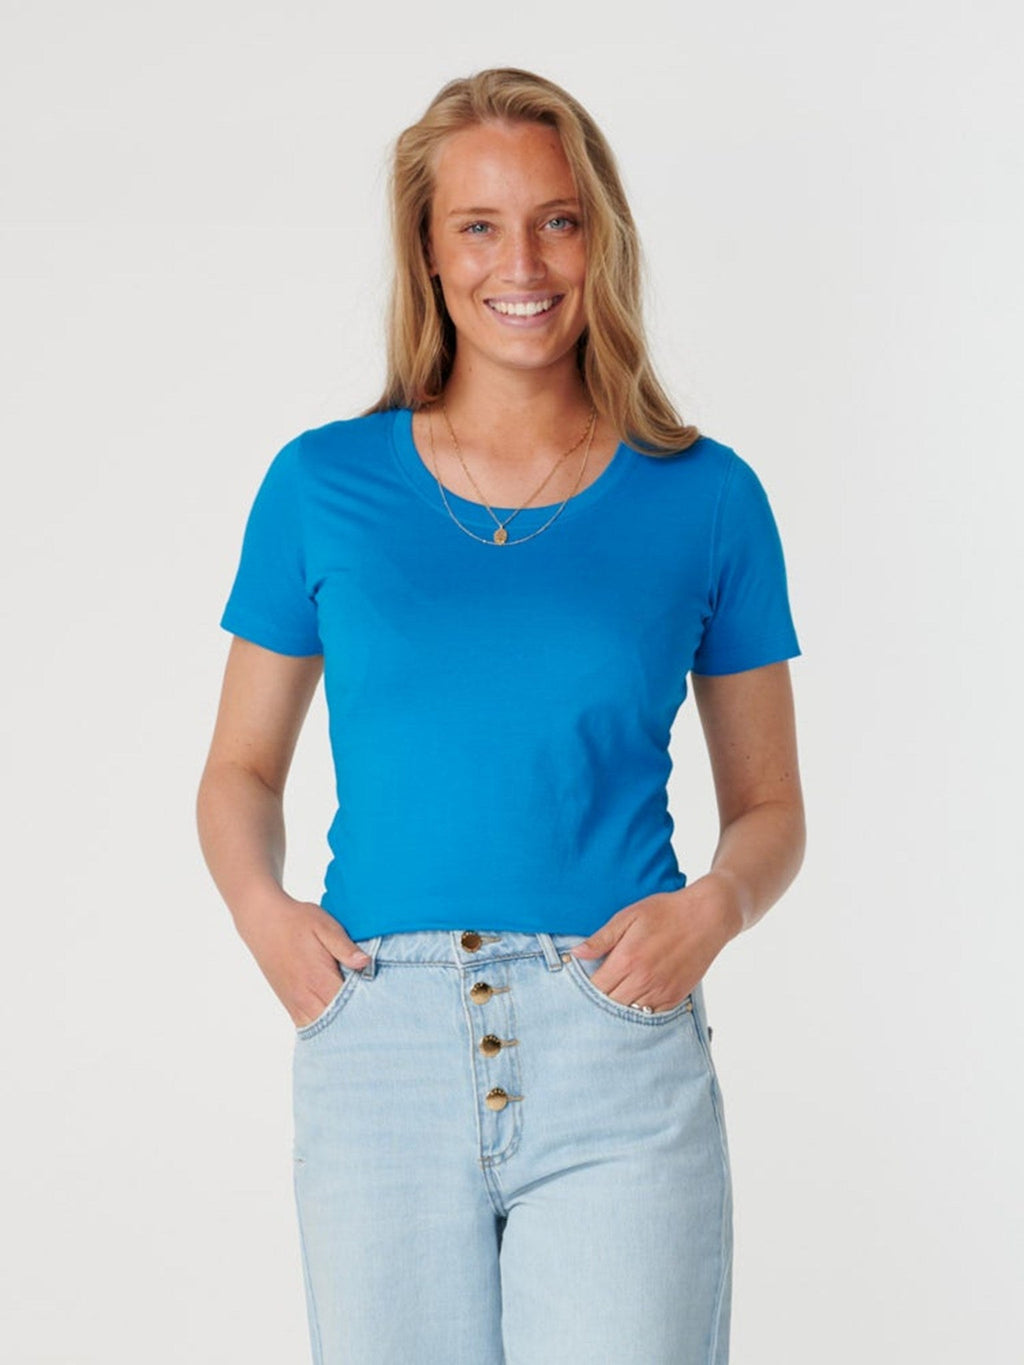 Gemonteerd t-shirt-torquoise blauw